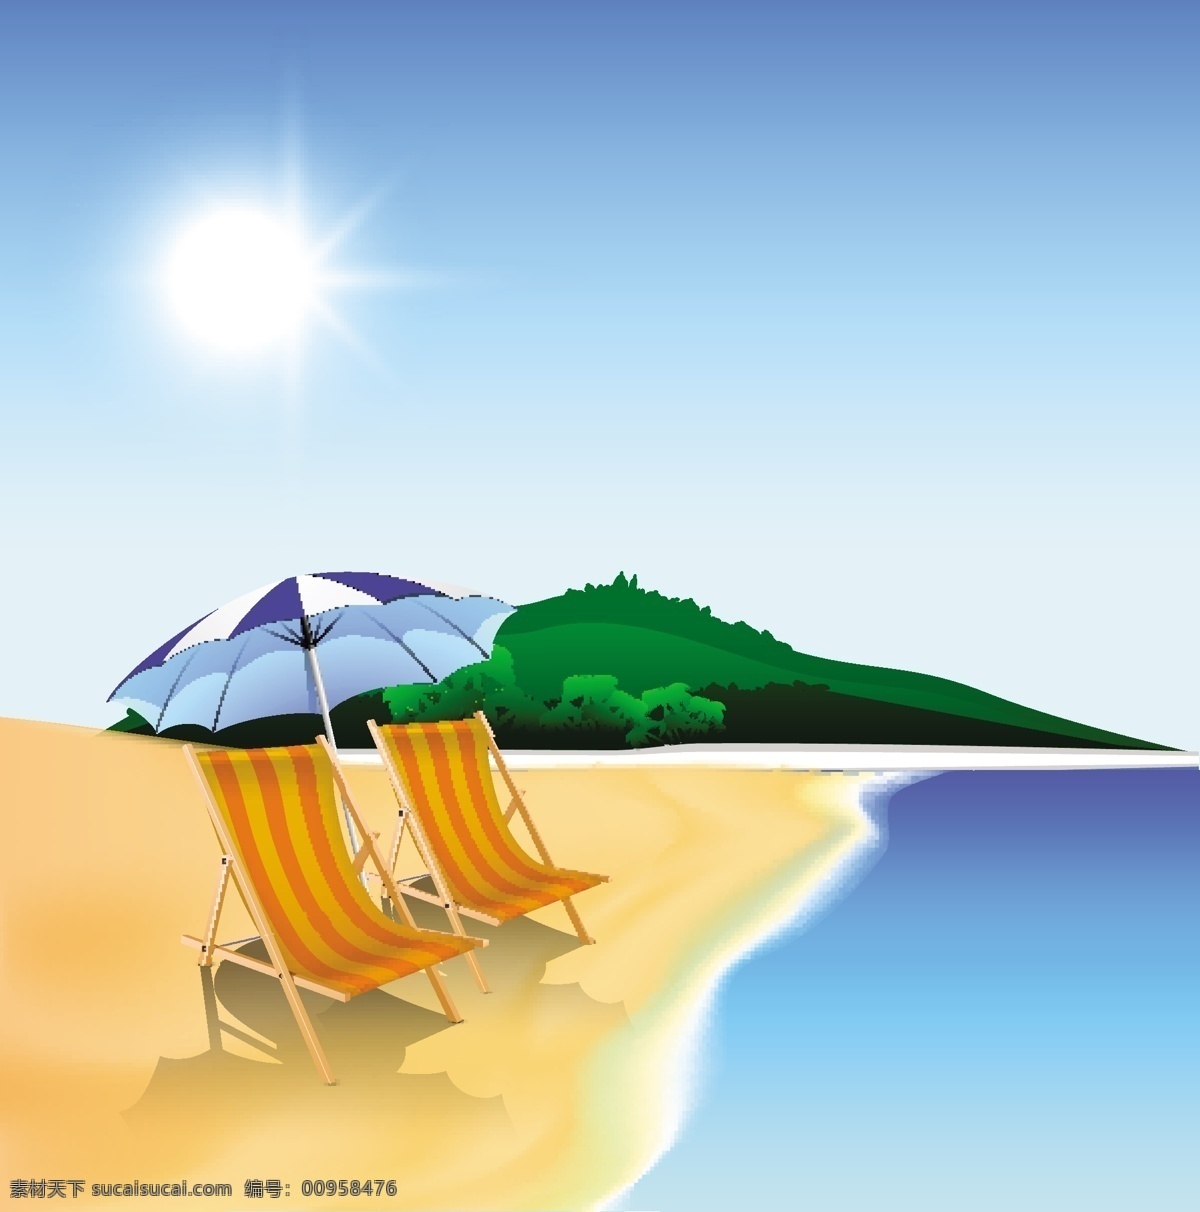 夏天 晚上 背景 海边 沙滩椅 雨伞 矢量图 商务金融